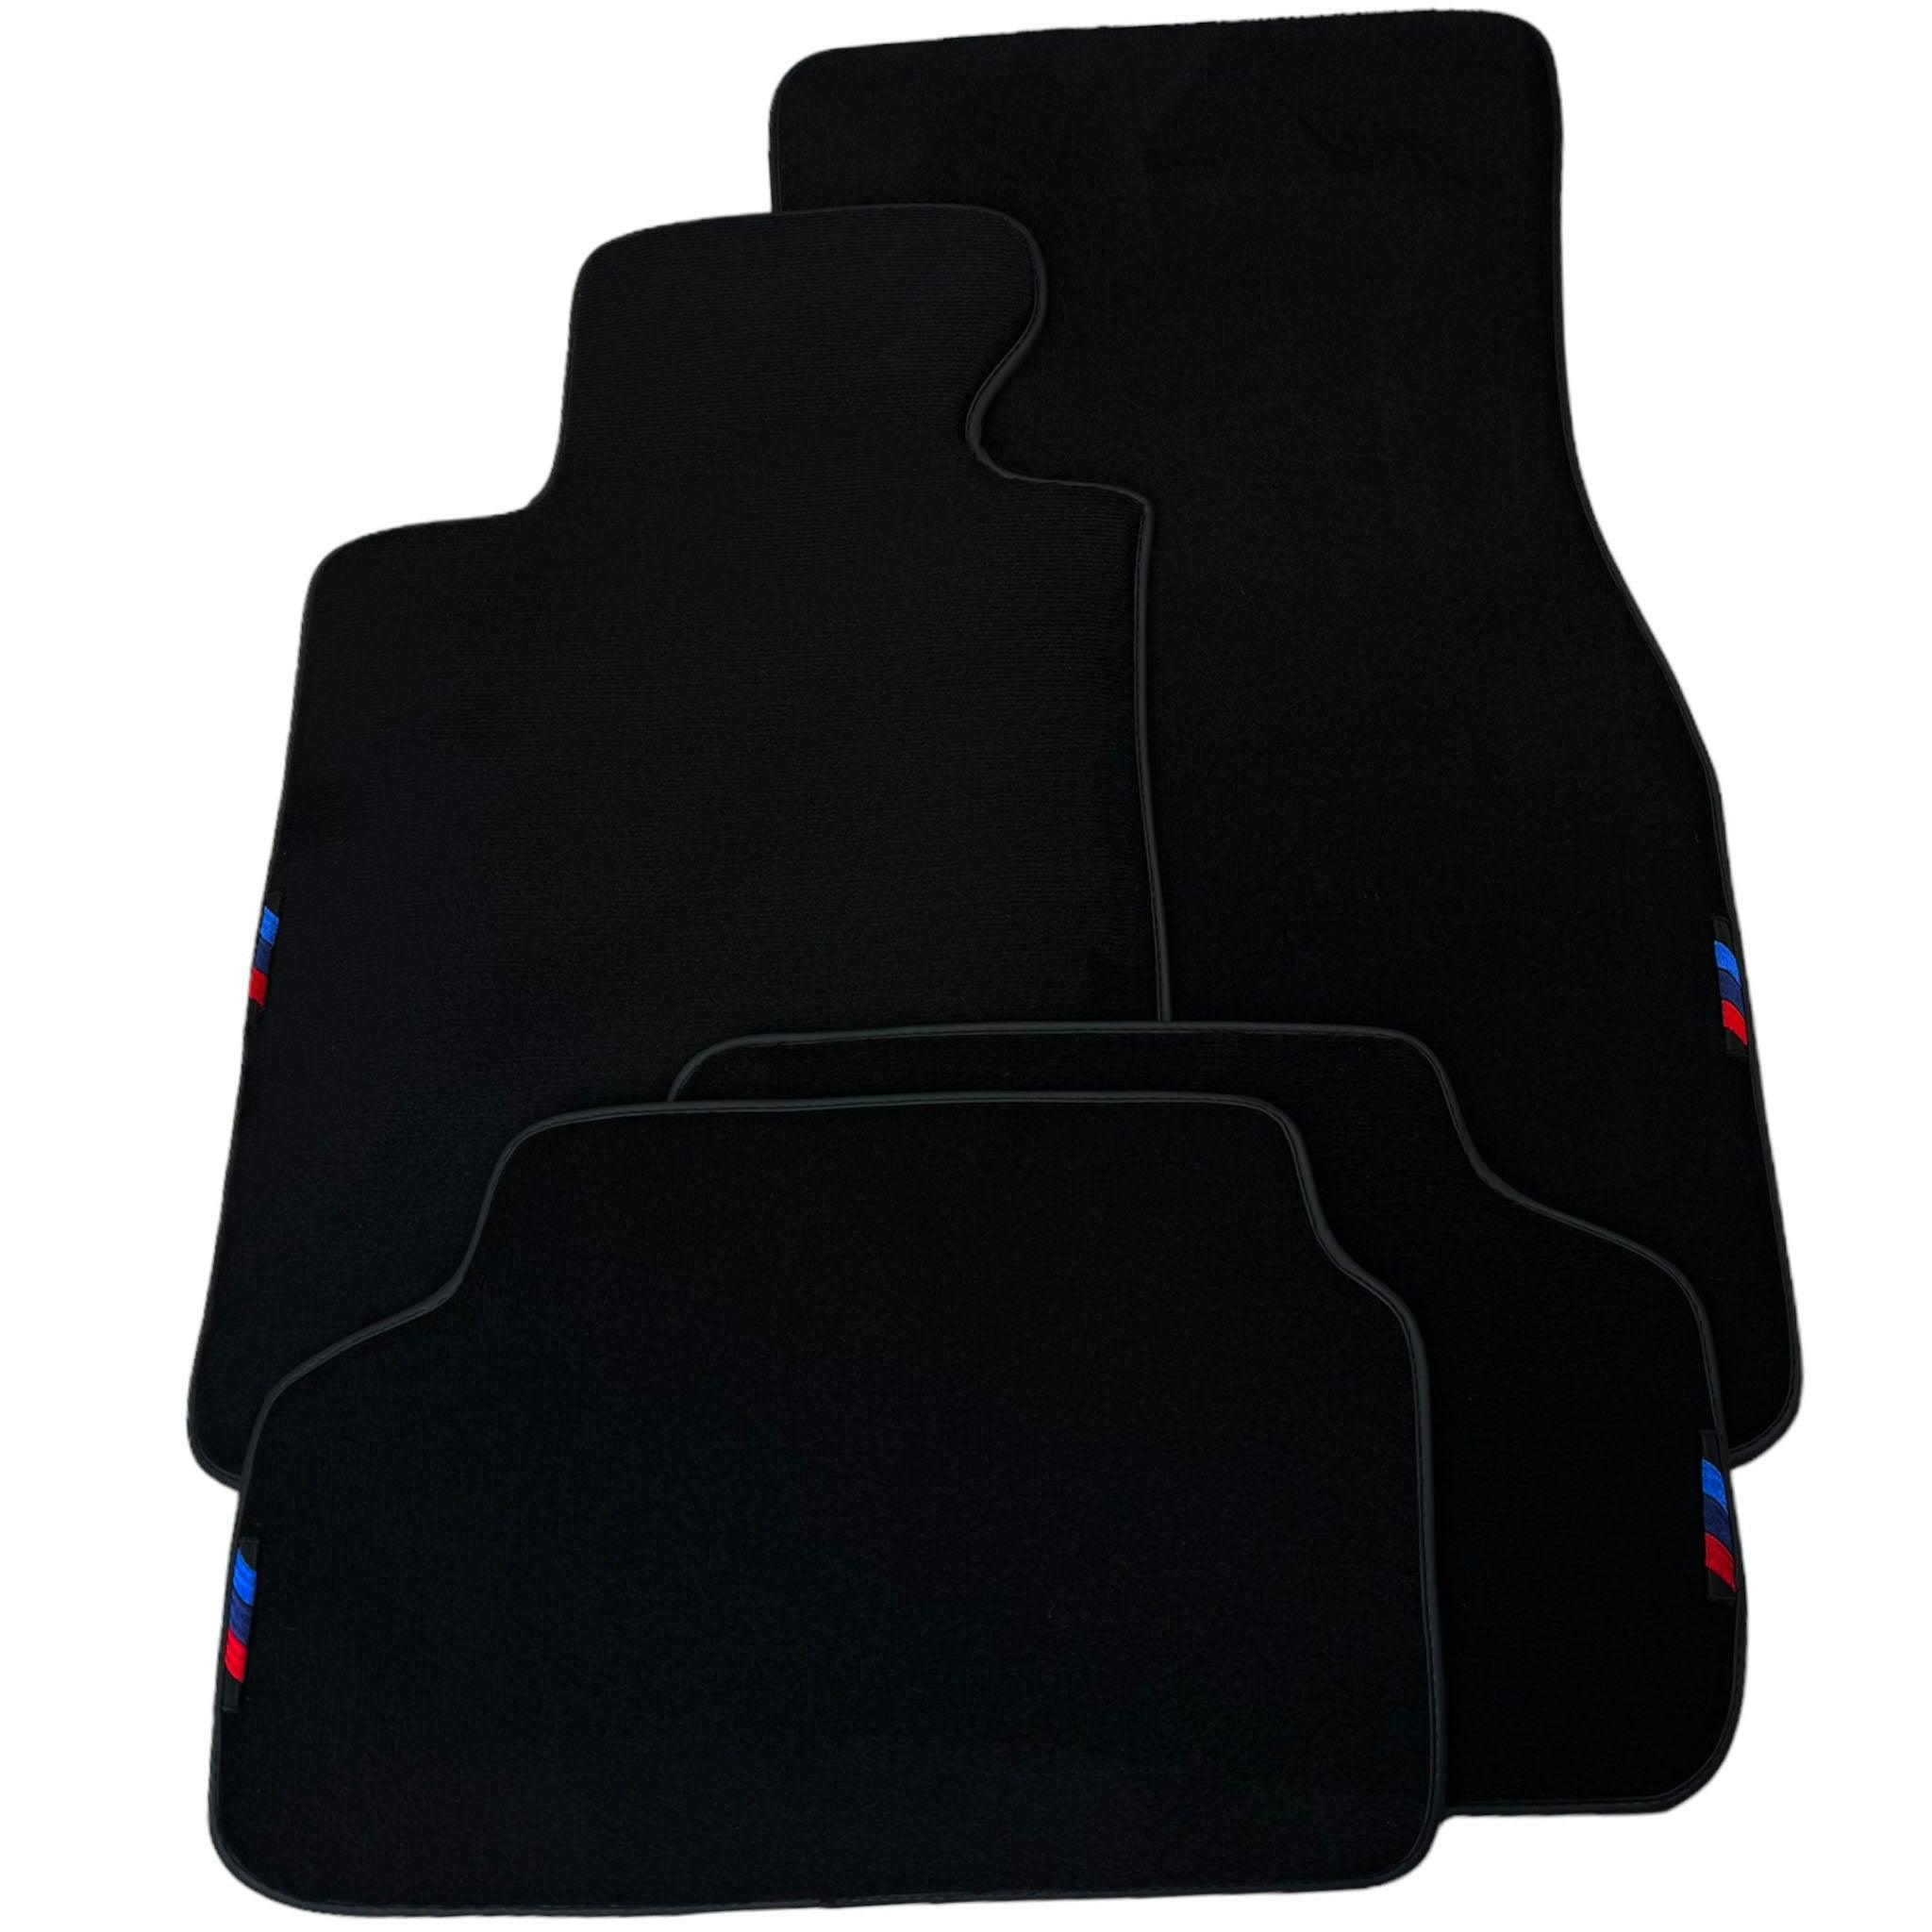 Black Floor Mats For BMW 8 Series G15 2-door Coupe | Black Trim